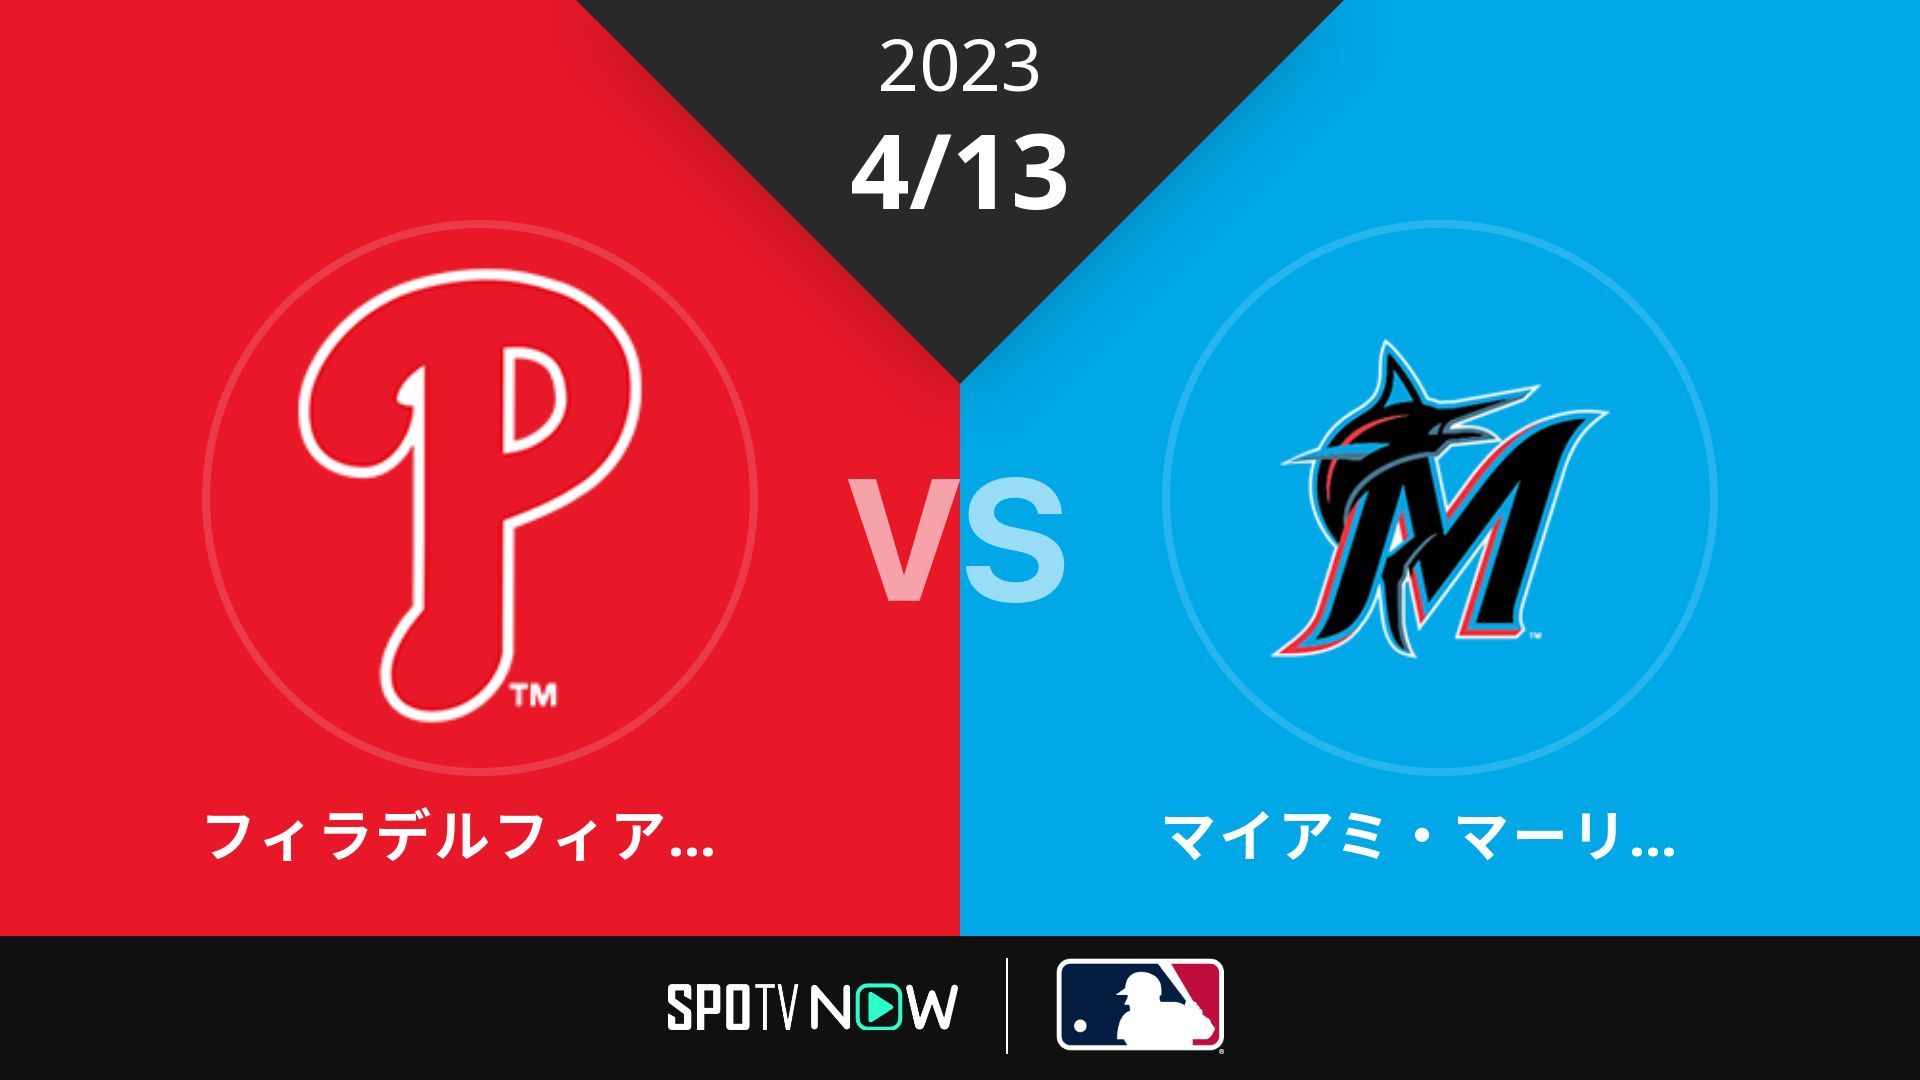 2023/4/13 フィリーズ vs マーリンズ [MLB]